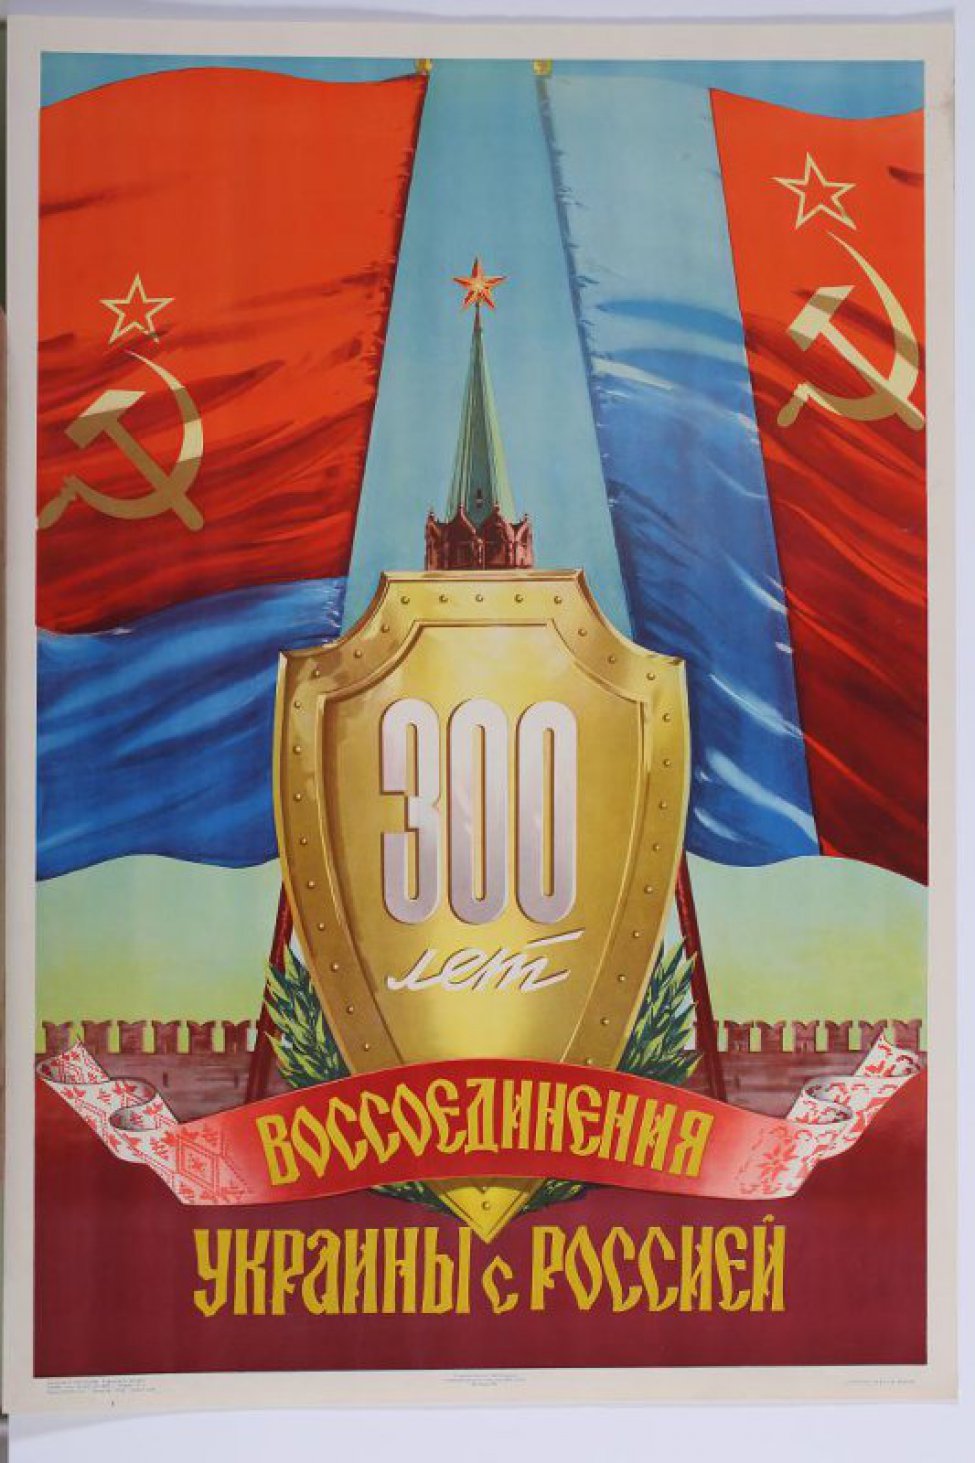 На щите, из под которого  видна верхняя часть Кремлевской башни написано " 300 лет", далее на ленте древне- русским шрифтом " воссоединение" и на фоне кремлевской стены             " Украины с Россией" . Вверху два красные, с синими полосами, знамени.